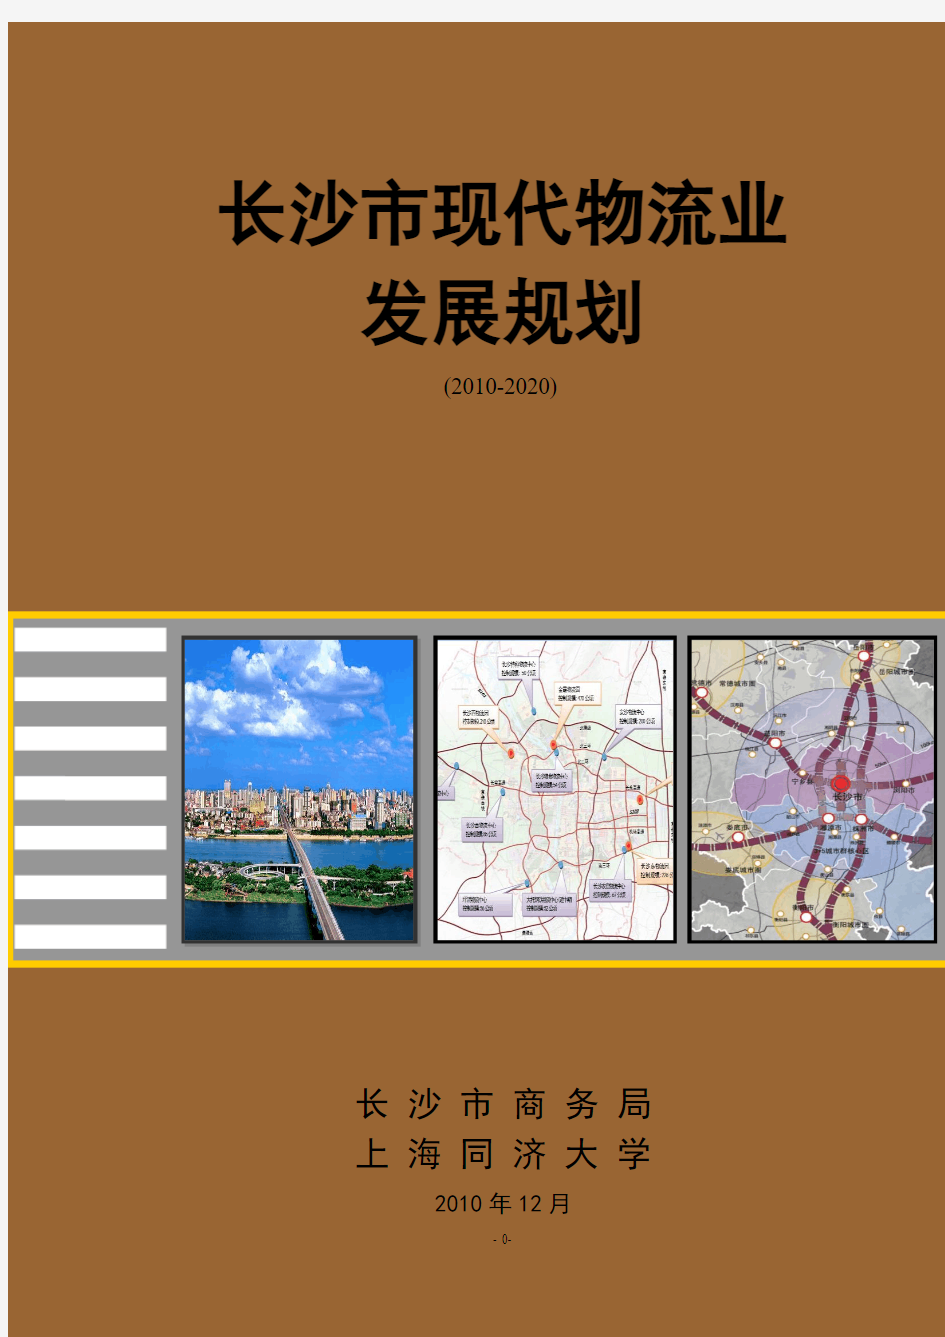 长沙市现代物流业发展规划2010-2020 (A4)(1)